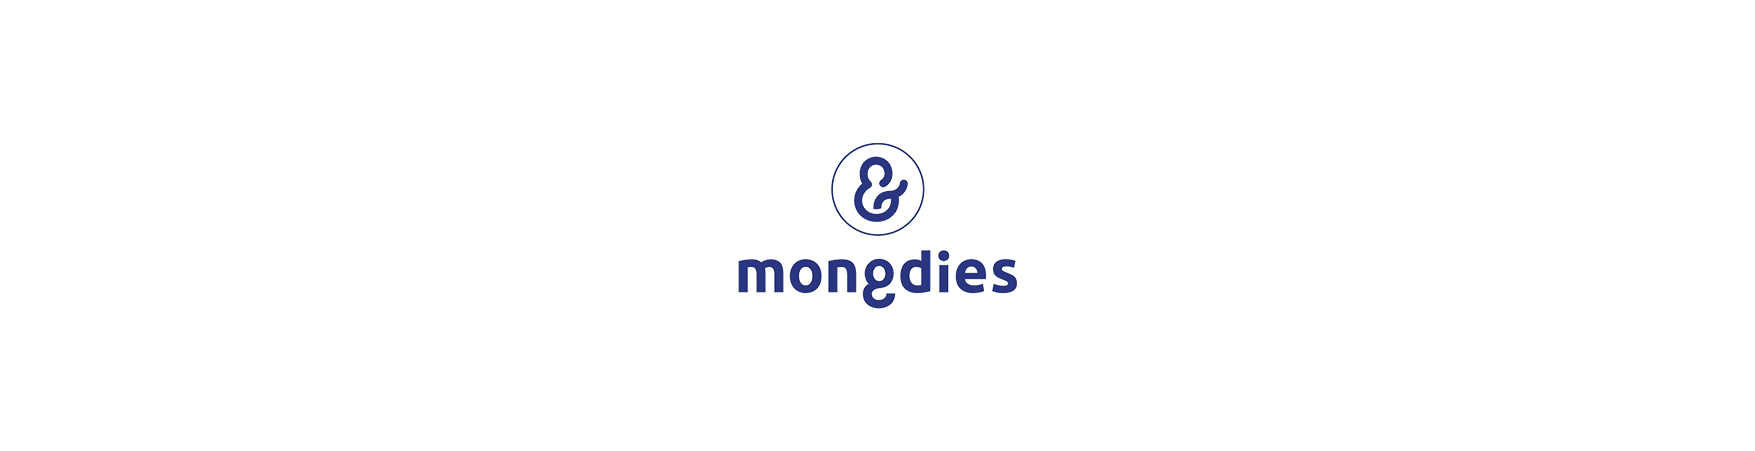 Mongdies